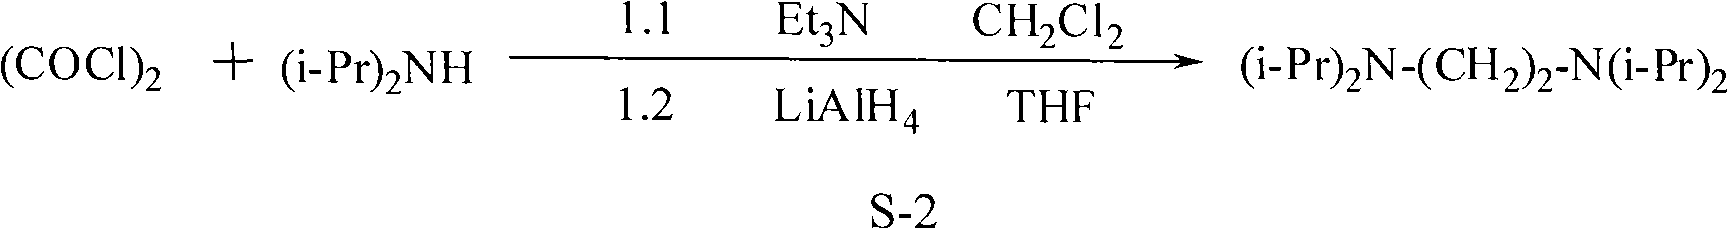 Synthesis method of N, N, N', N'-tetraisopropyl ethylene diamine